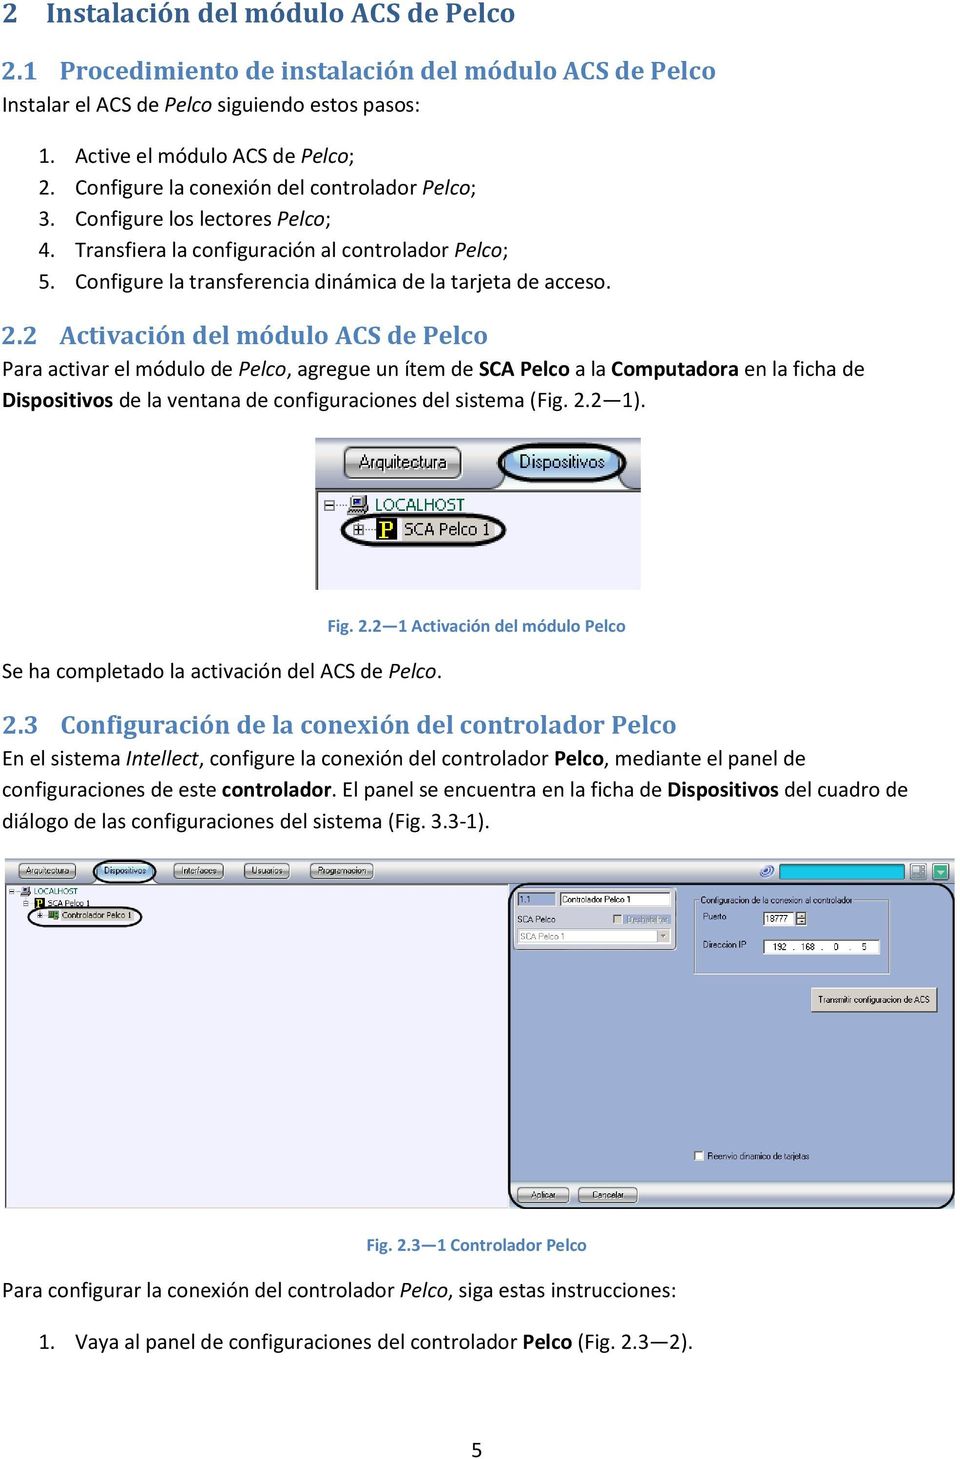 2 Activación del módulo ACS de Pelco Para activar el módulo de Pelco, agregue un ítem de SCA Pelco a la Computadora en la ficha de Dispositivos de la ventana de configuraciones del sistema (Fig. 2.